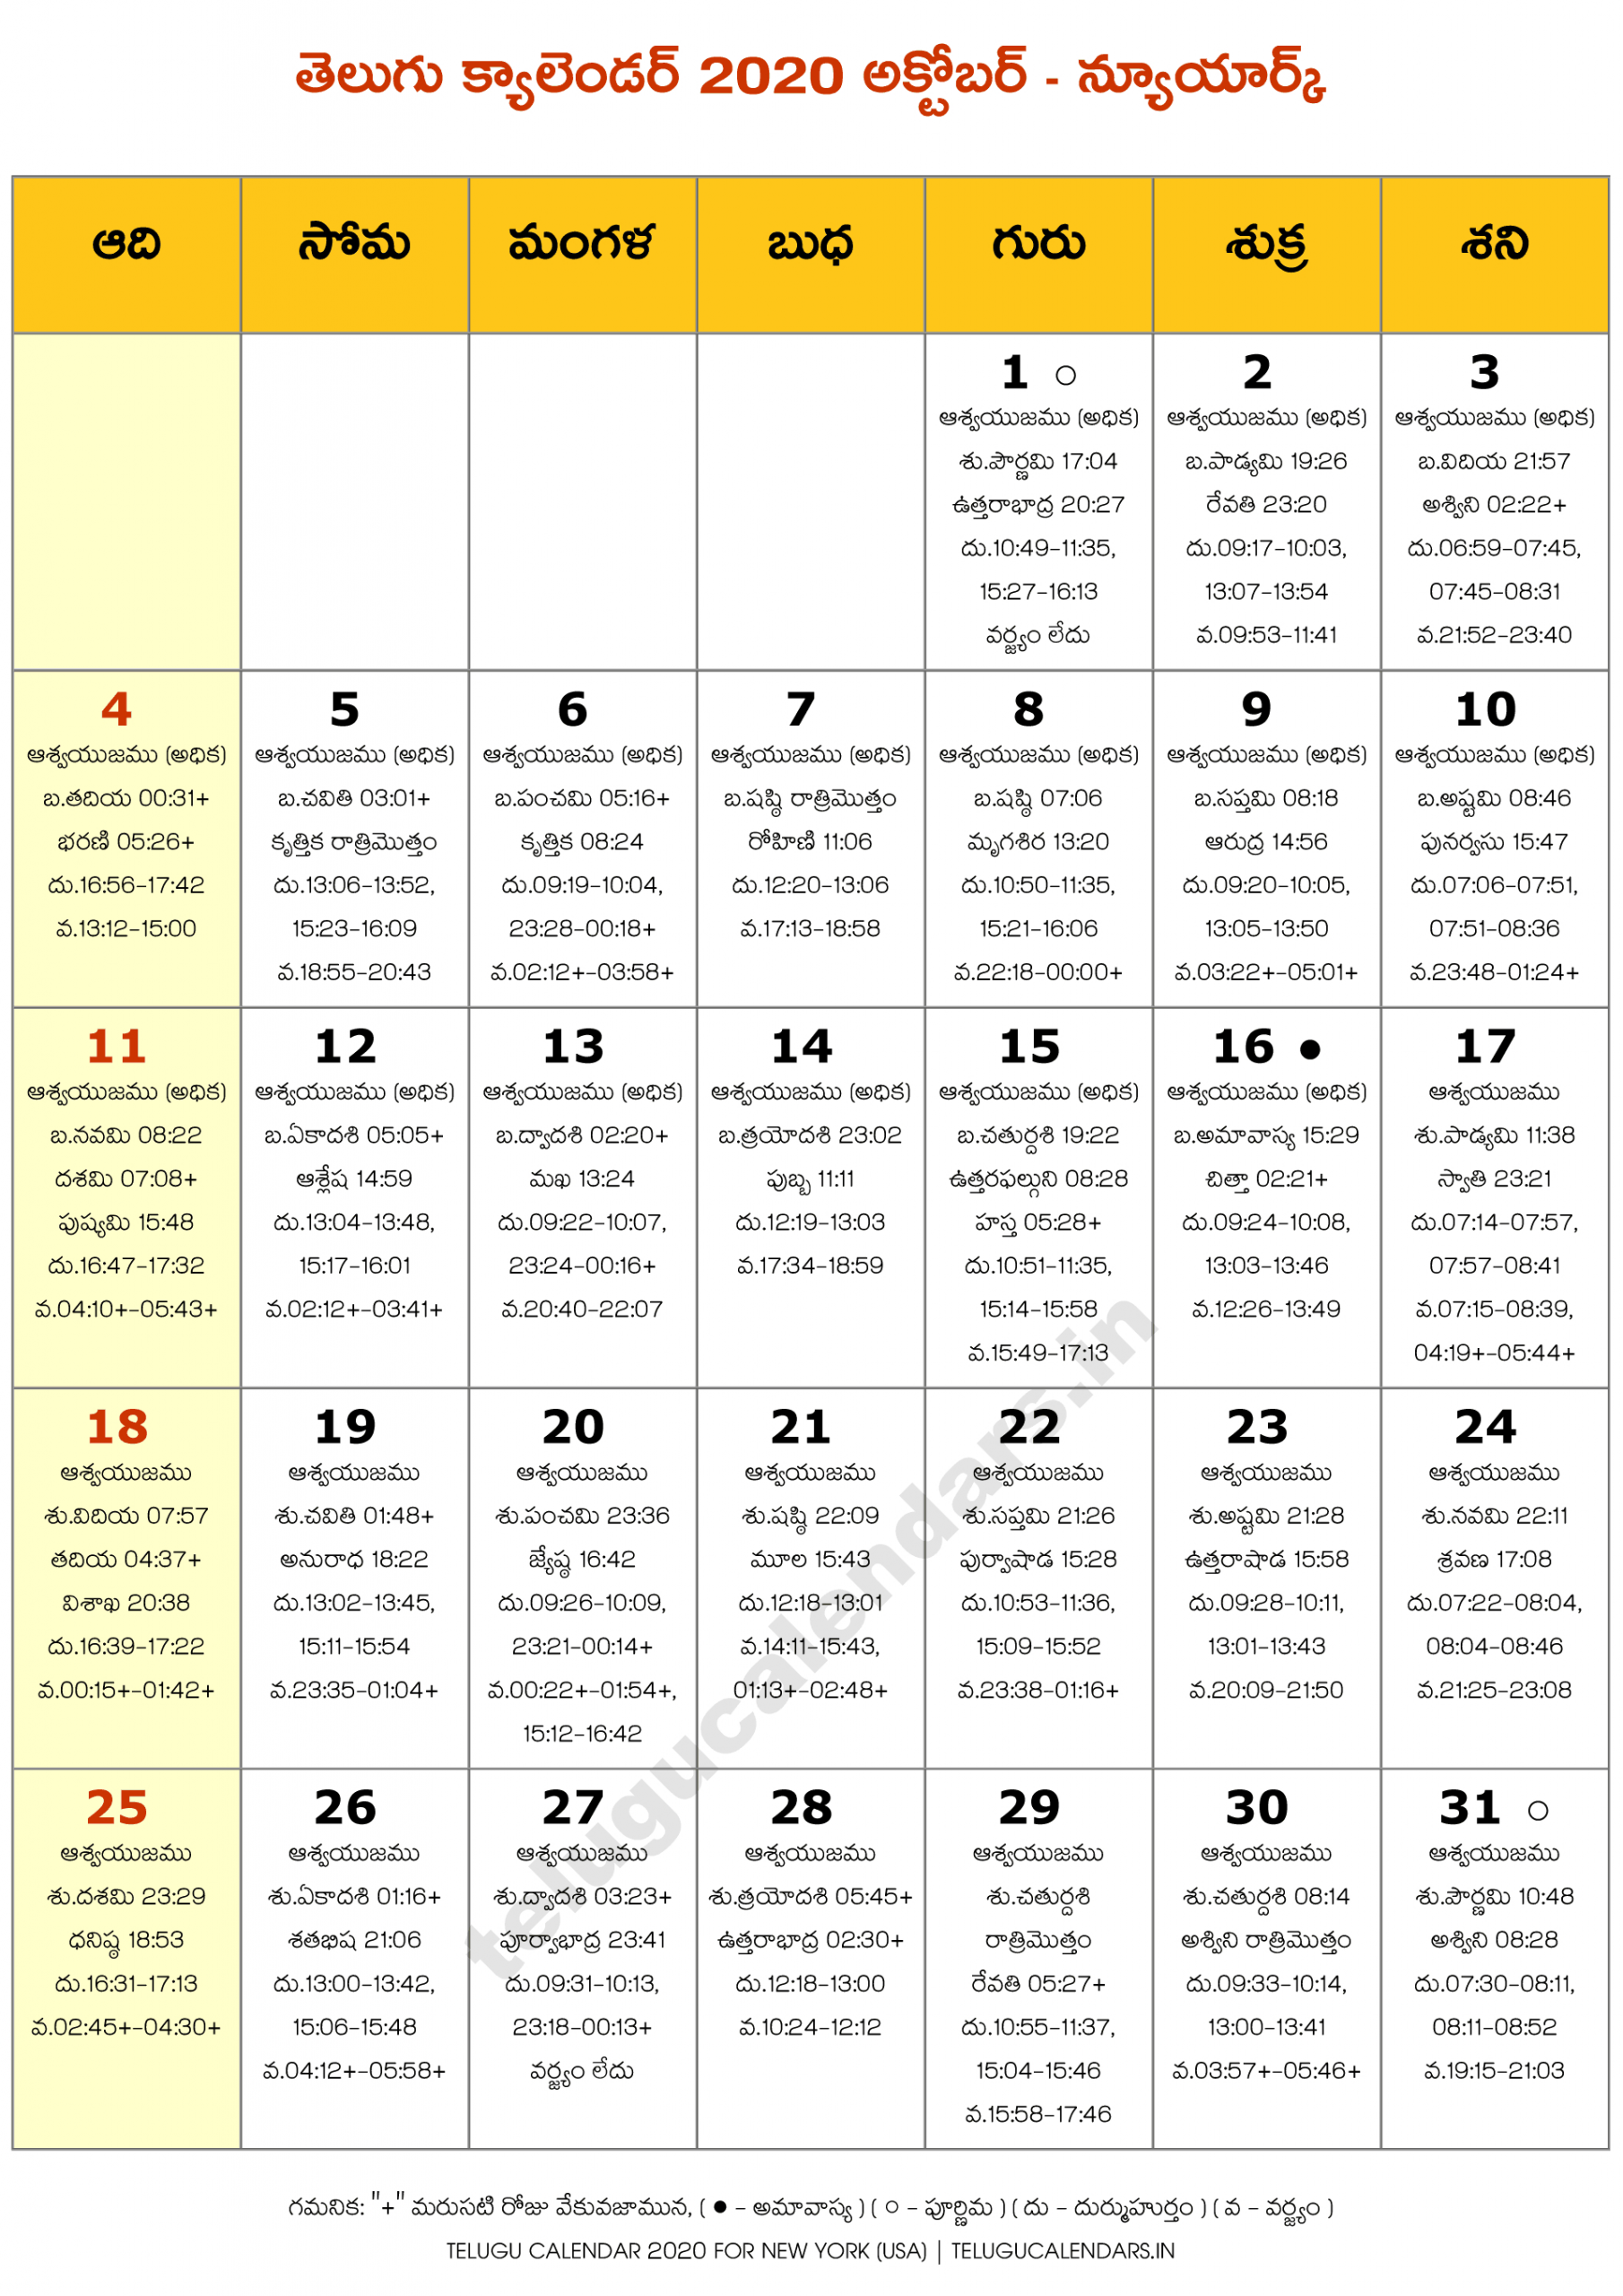 Telugu Calendar 2022 Usa - December Calendar 2022